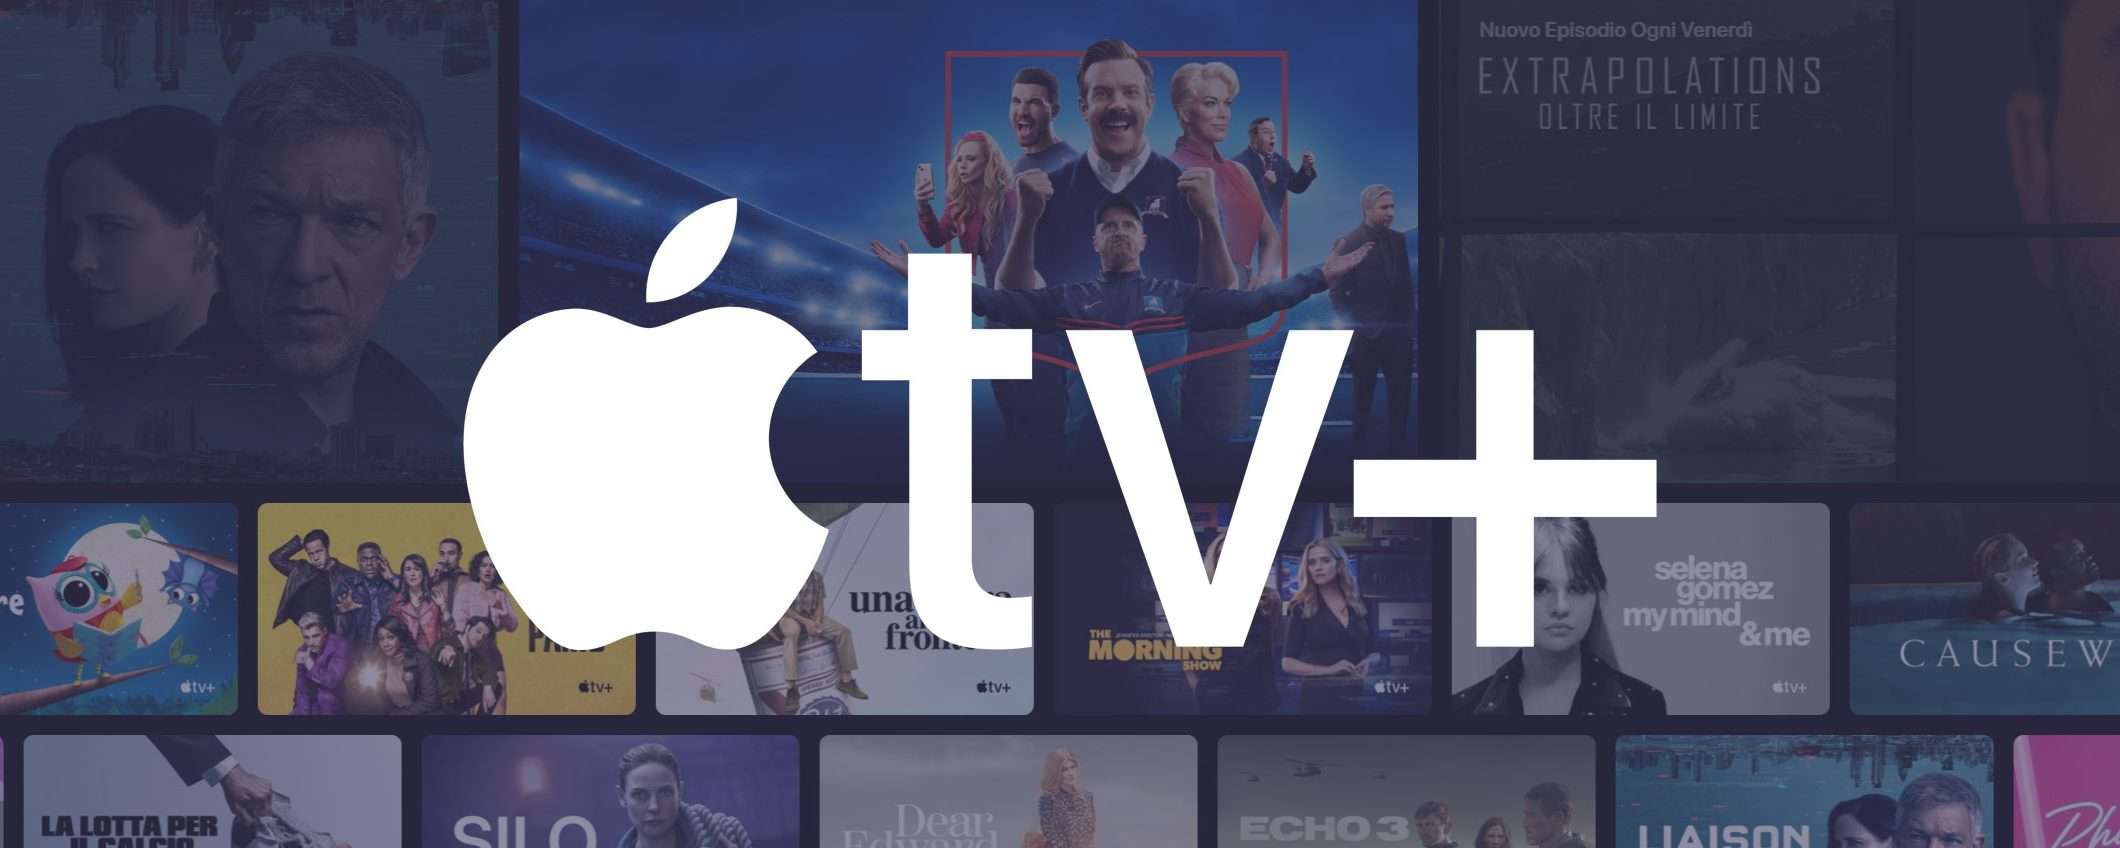 Apple TV+: spettatori e ore di visualizzazione in aumento